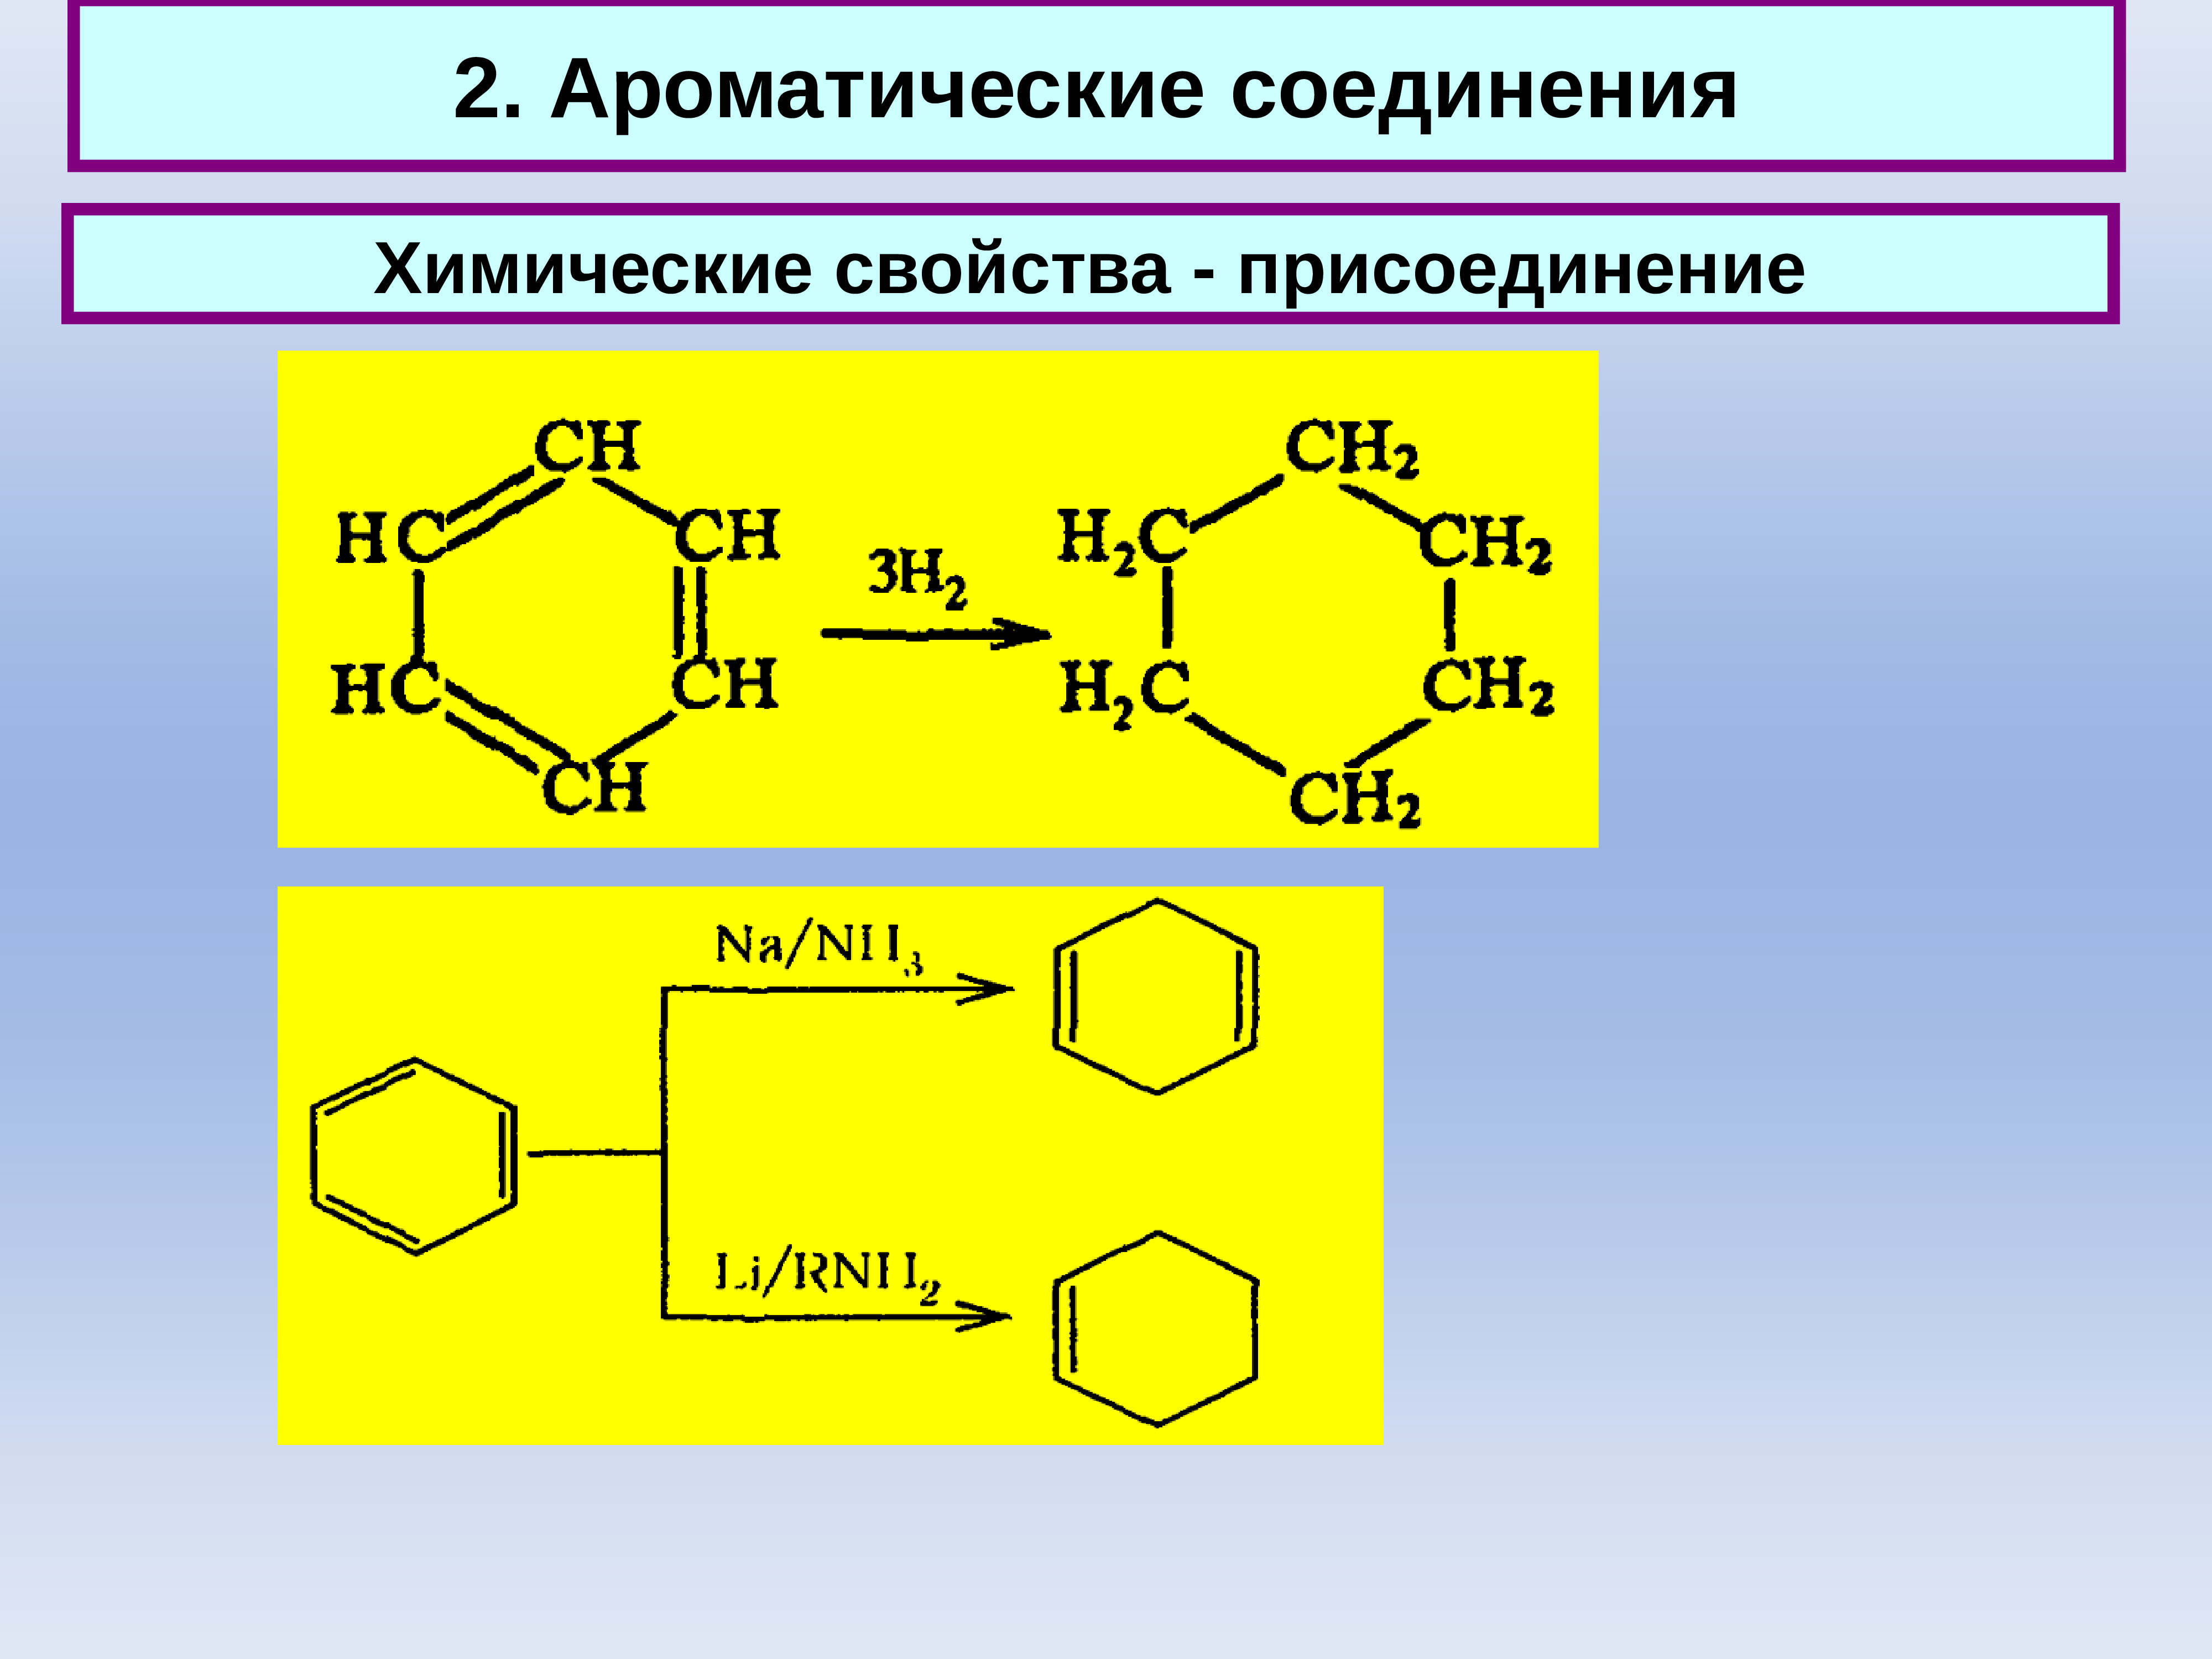 Ароматическое соединение 4. Ароматические соединения. Химические свойства ароматических соединений. Ароматическое карбоциклическое соединение. Характеристика ароматических соединений.